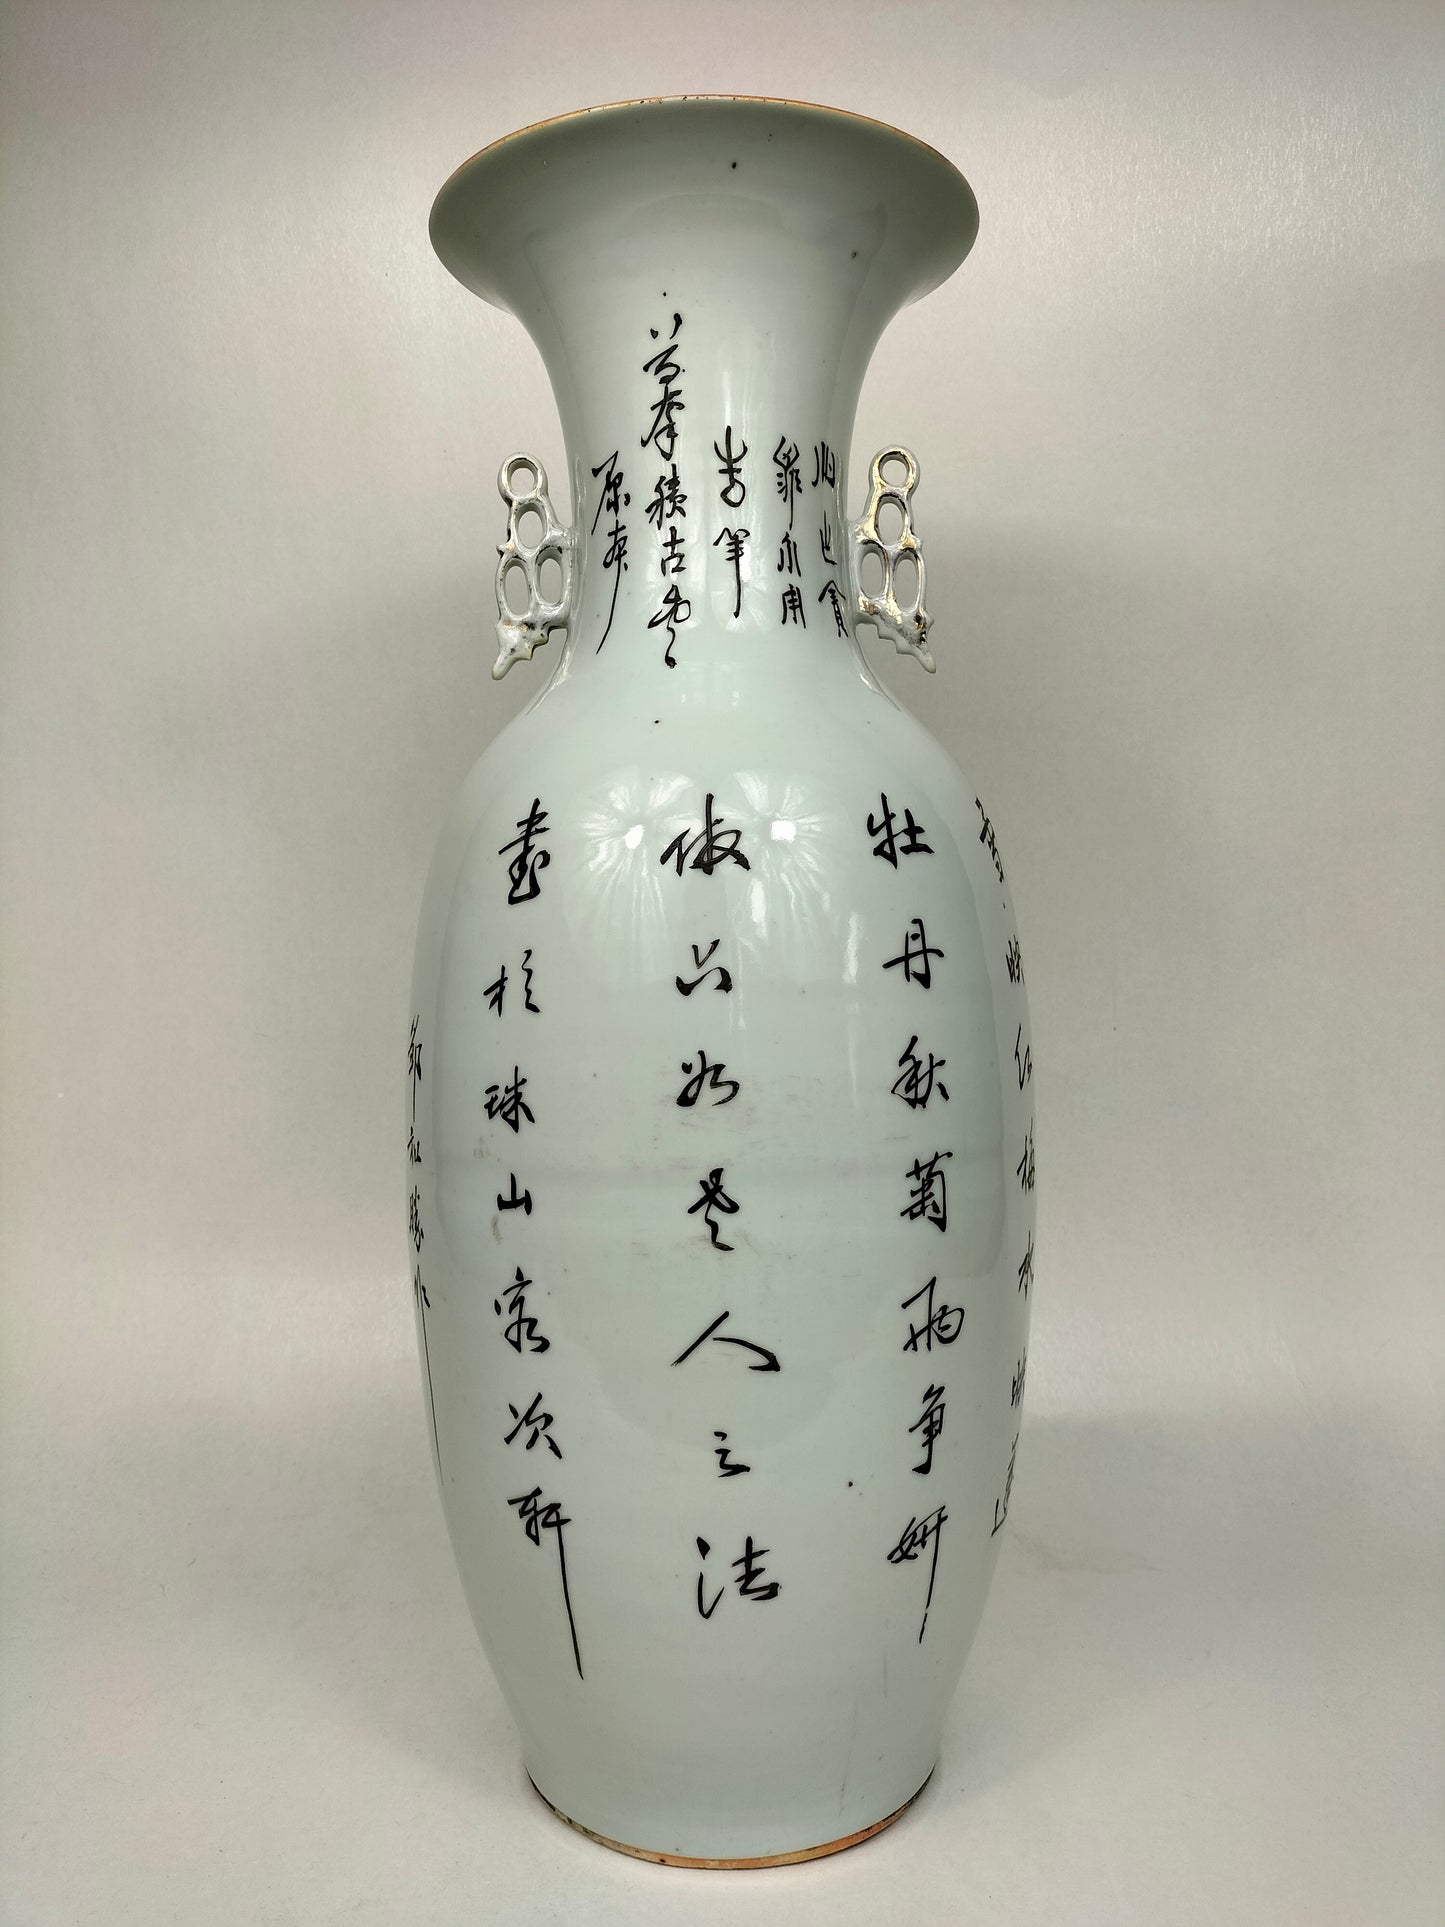 Pasu Cina antik besar dihiasi dengan bunga peonies // Tempoh Republik (1912-1949)